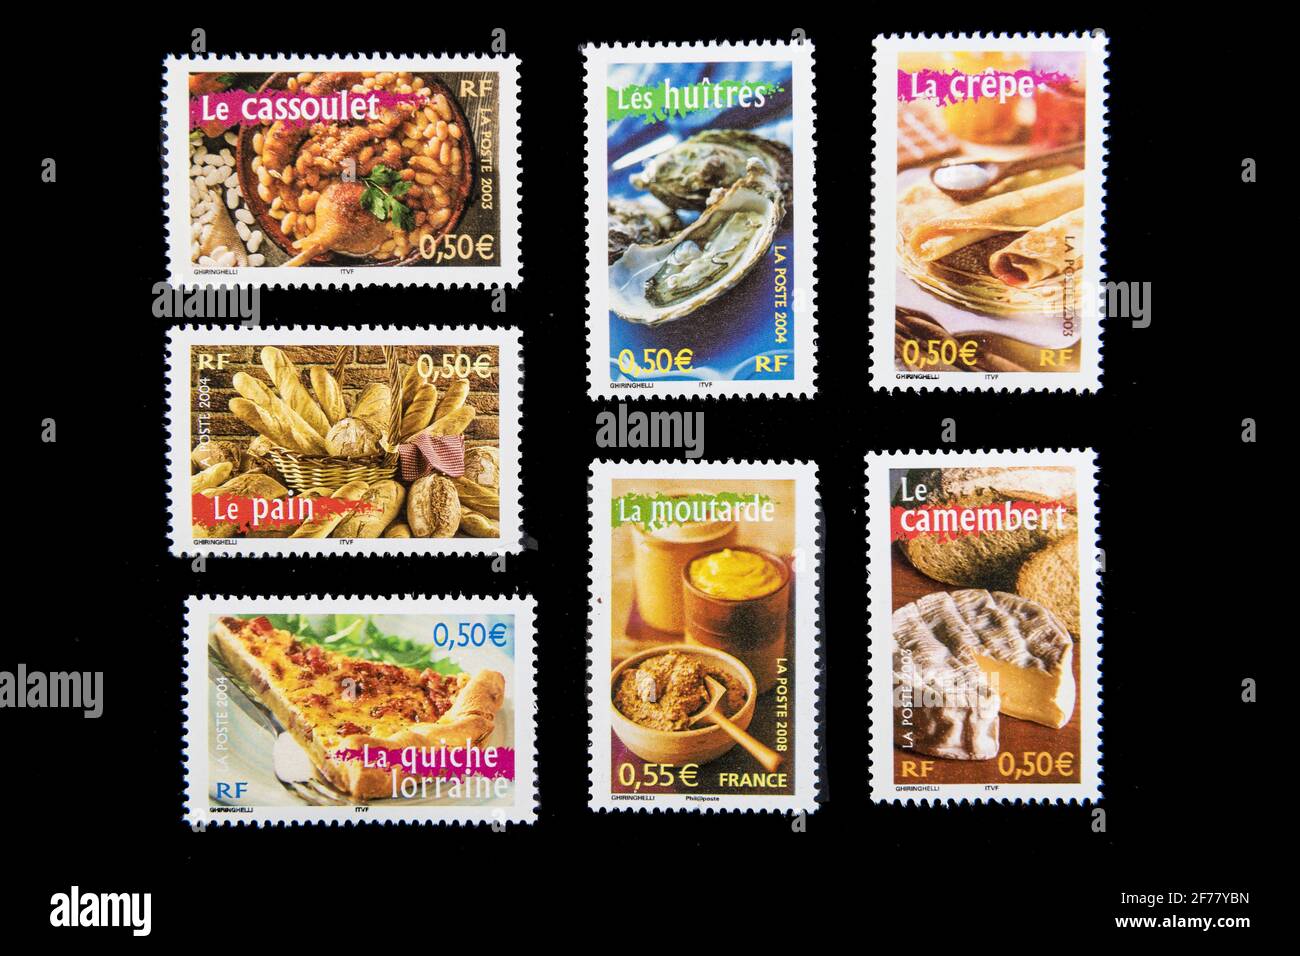 Francia, París, sellos, comida francesa Foto de stock